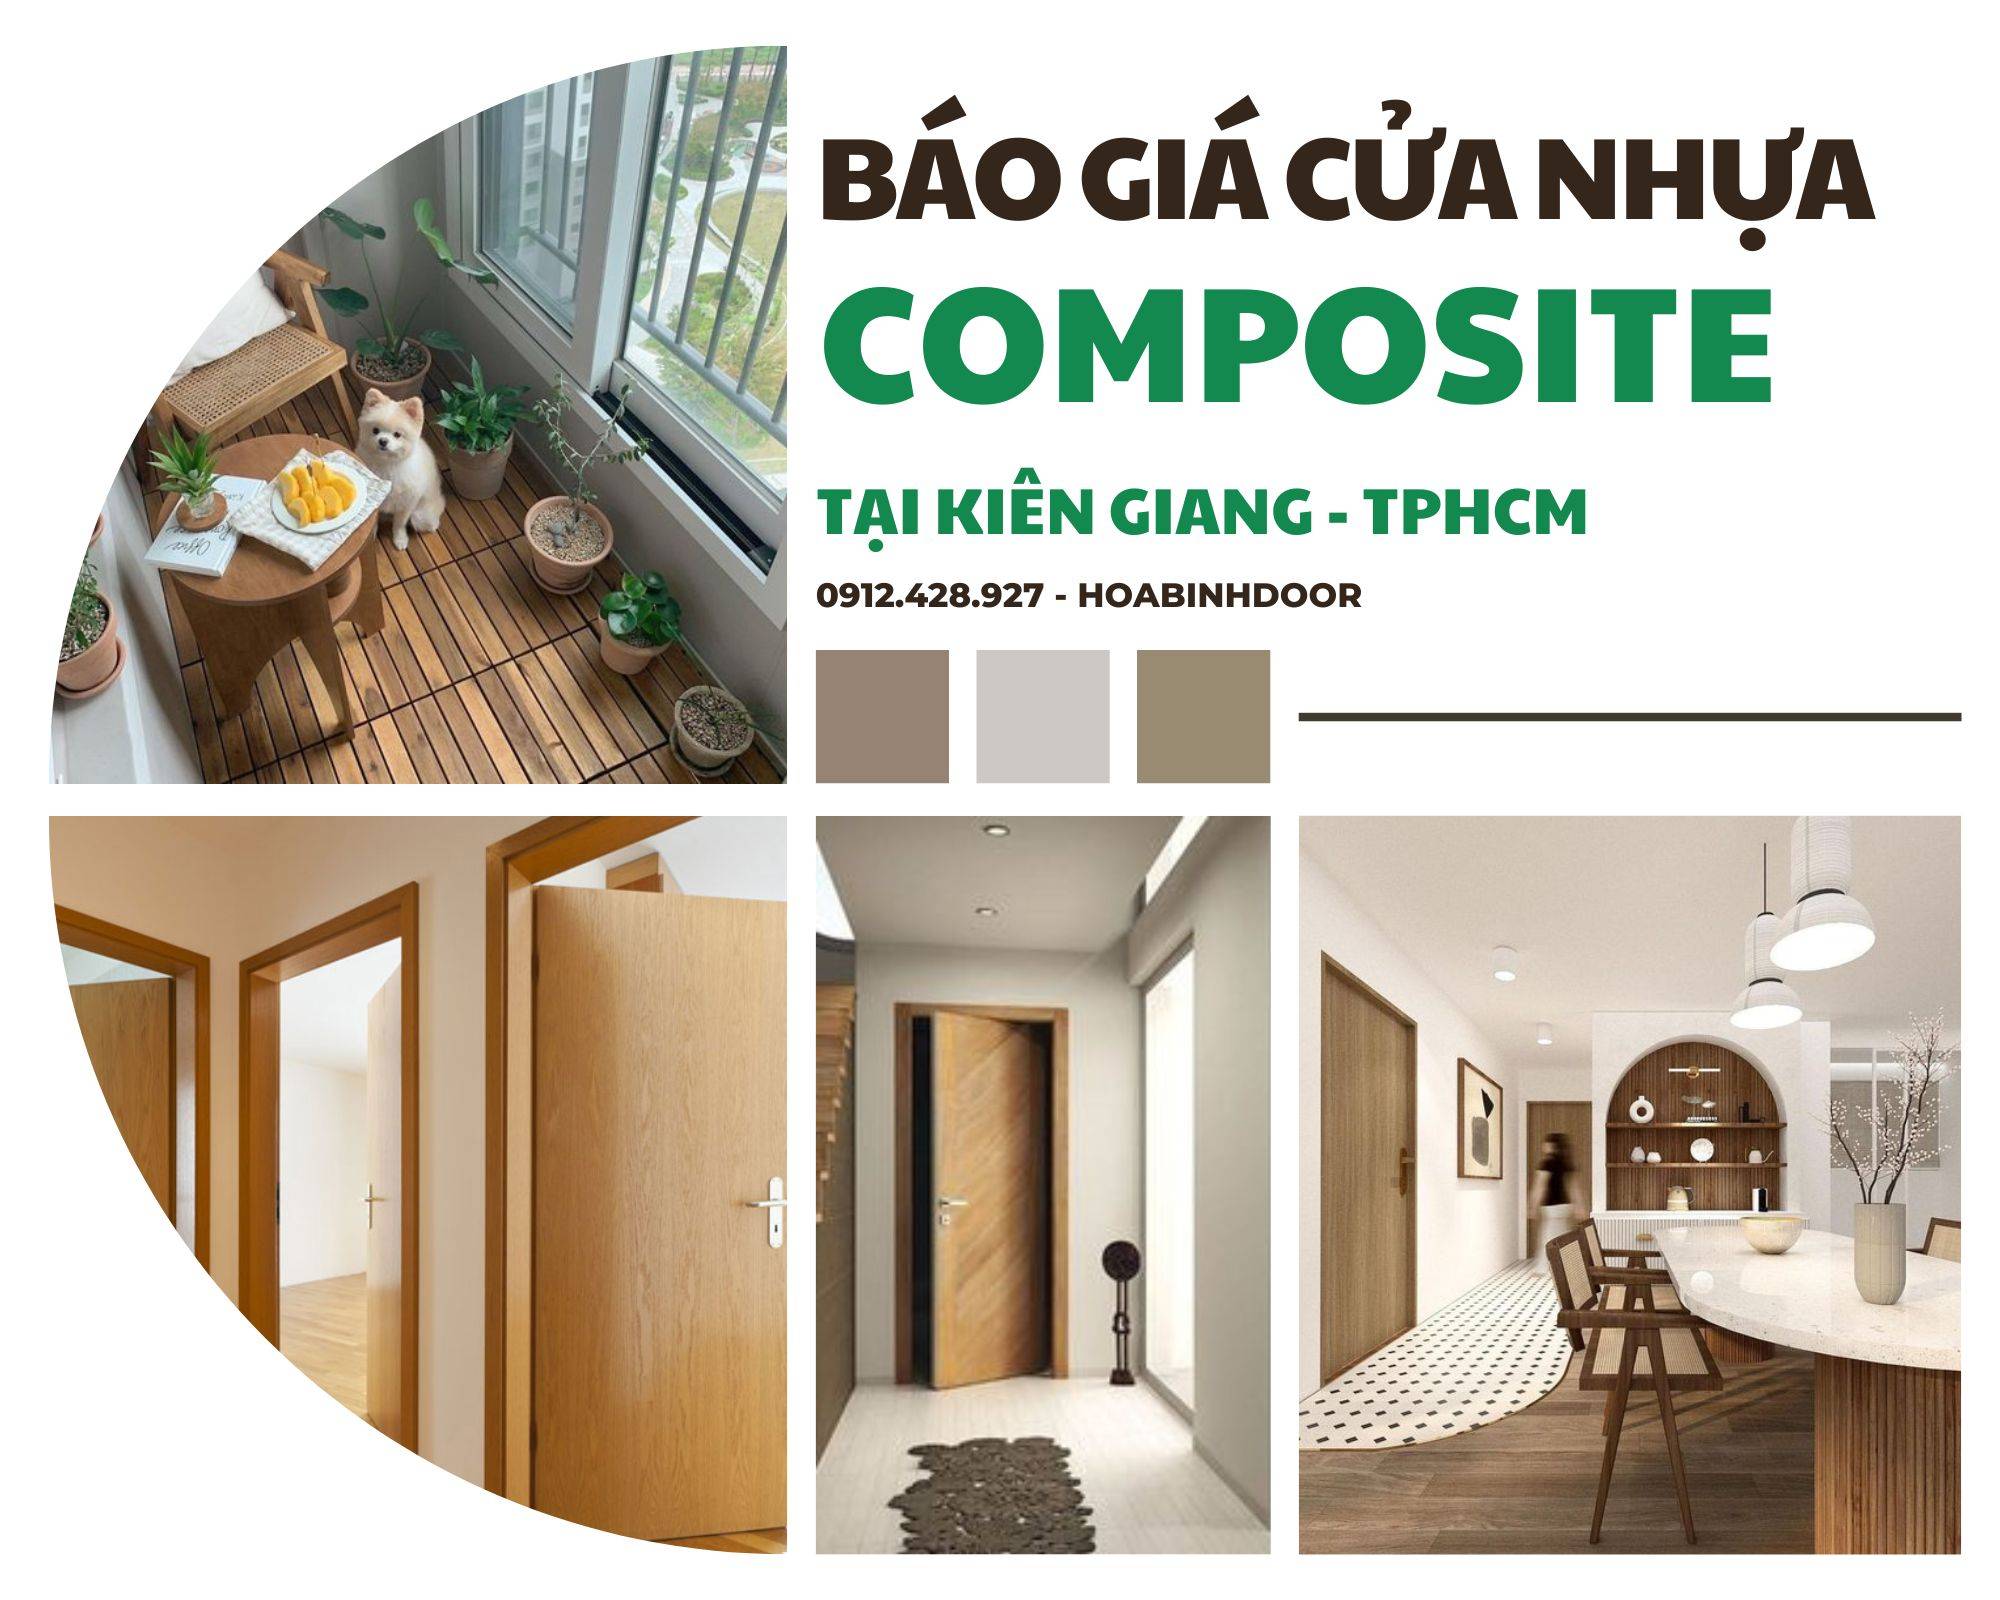 Cửa nhựa Composite tại Kiên Giang | Lắp đặt trọn gói